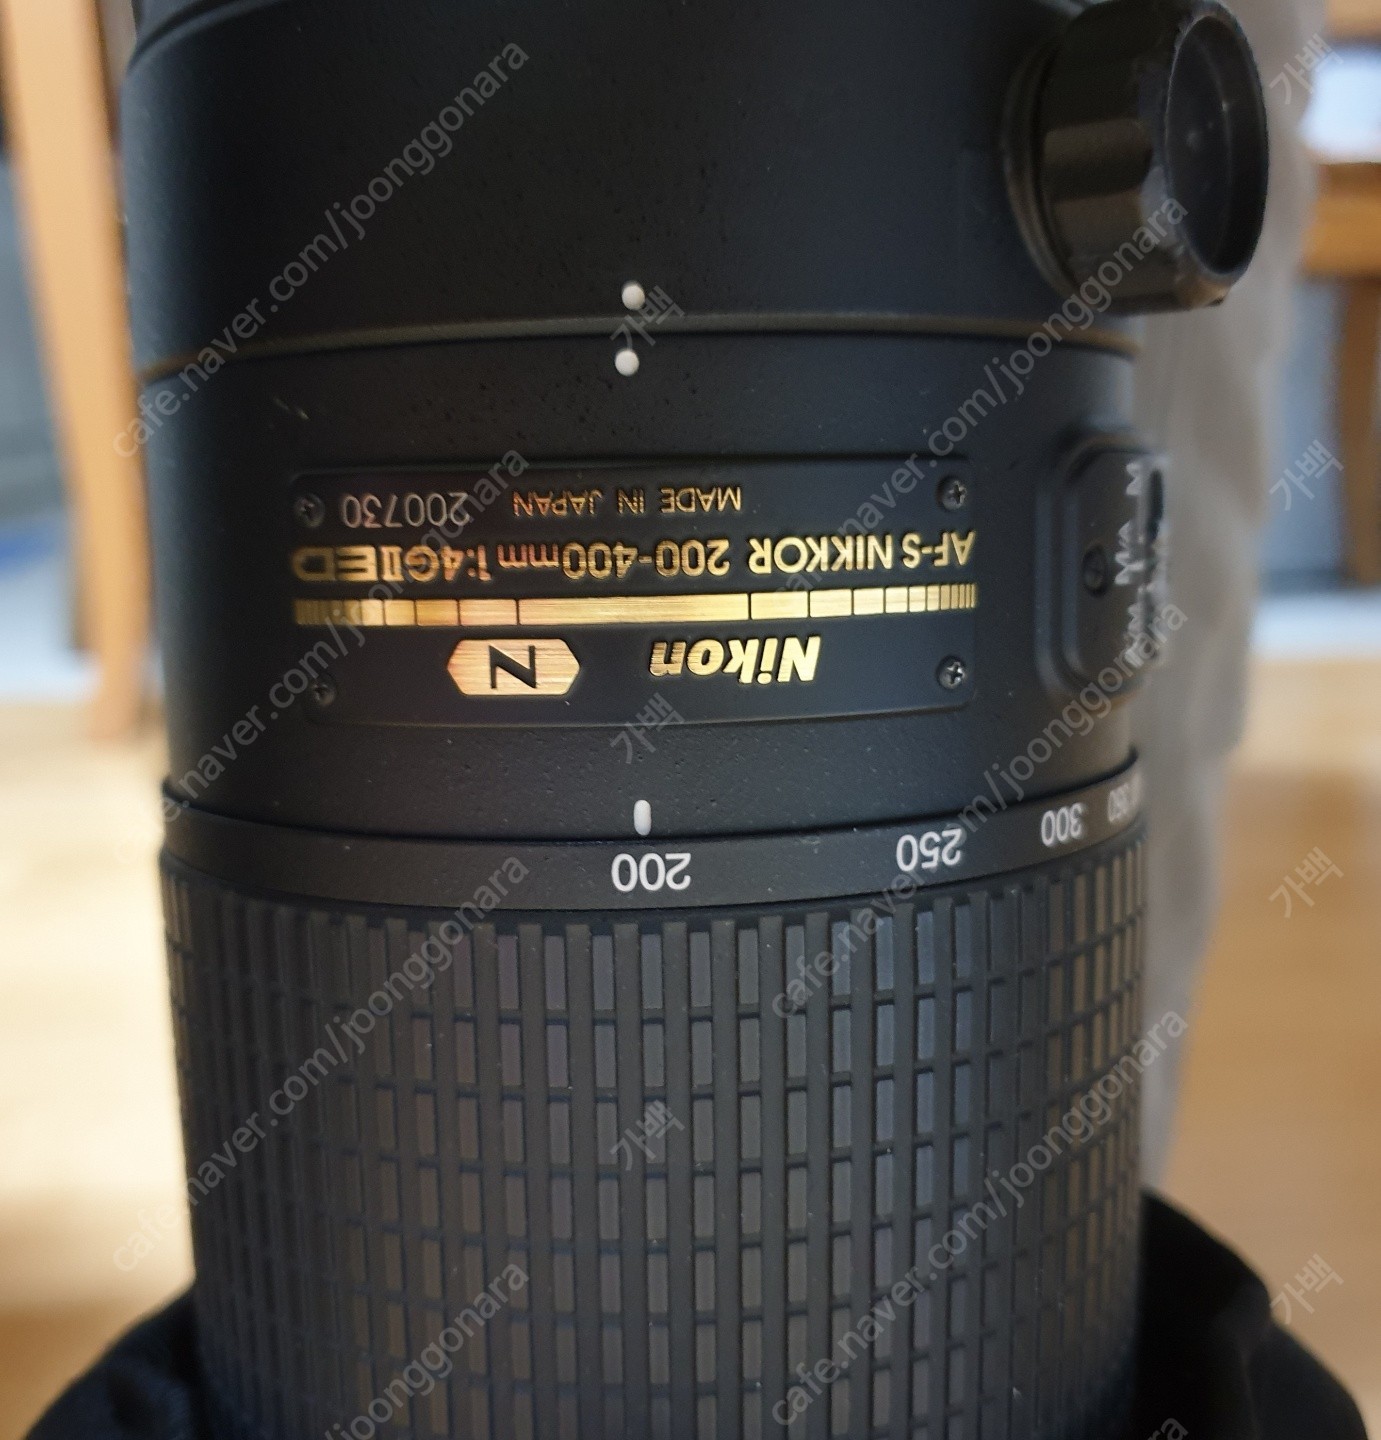 1608731981595.jpg : 니콘 NIKKOR 200-400mm f/4G ED VR II 렌즈(니콘 정품) 판매